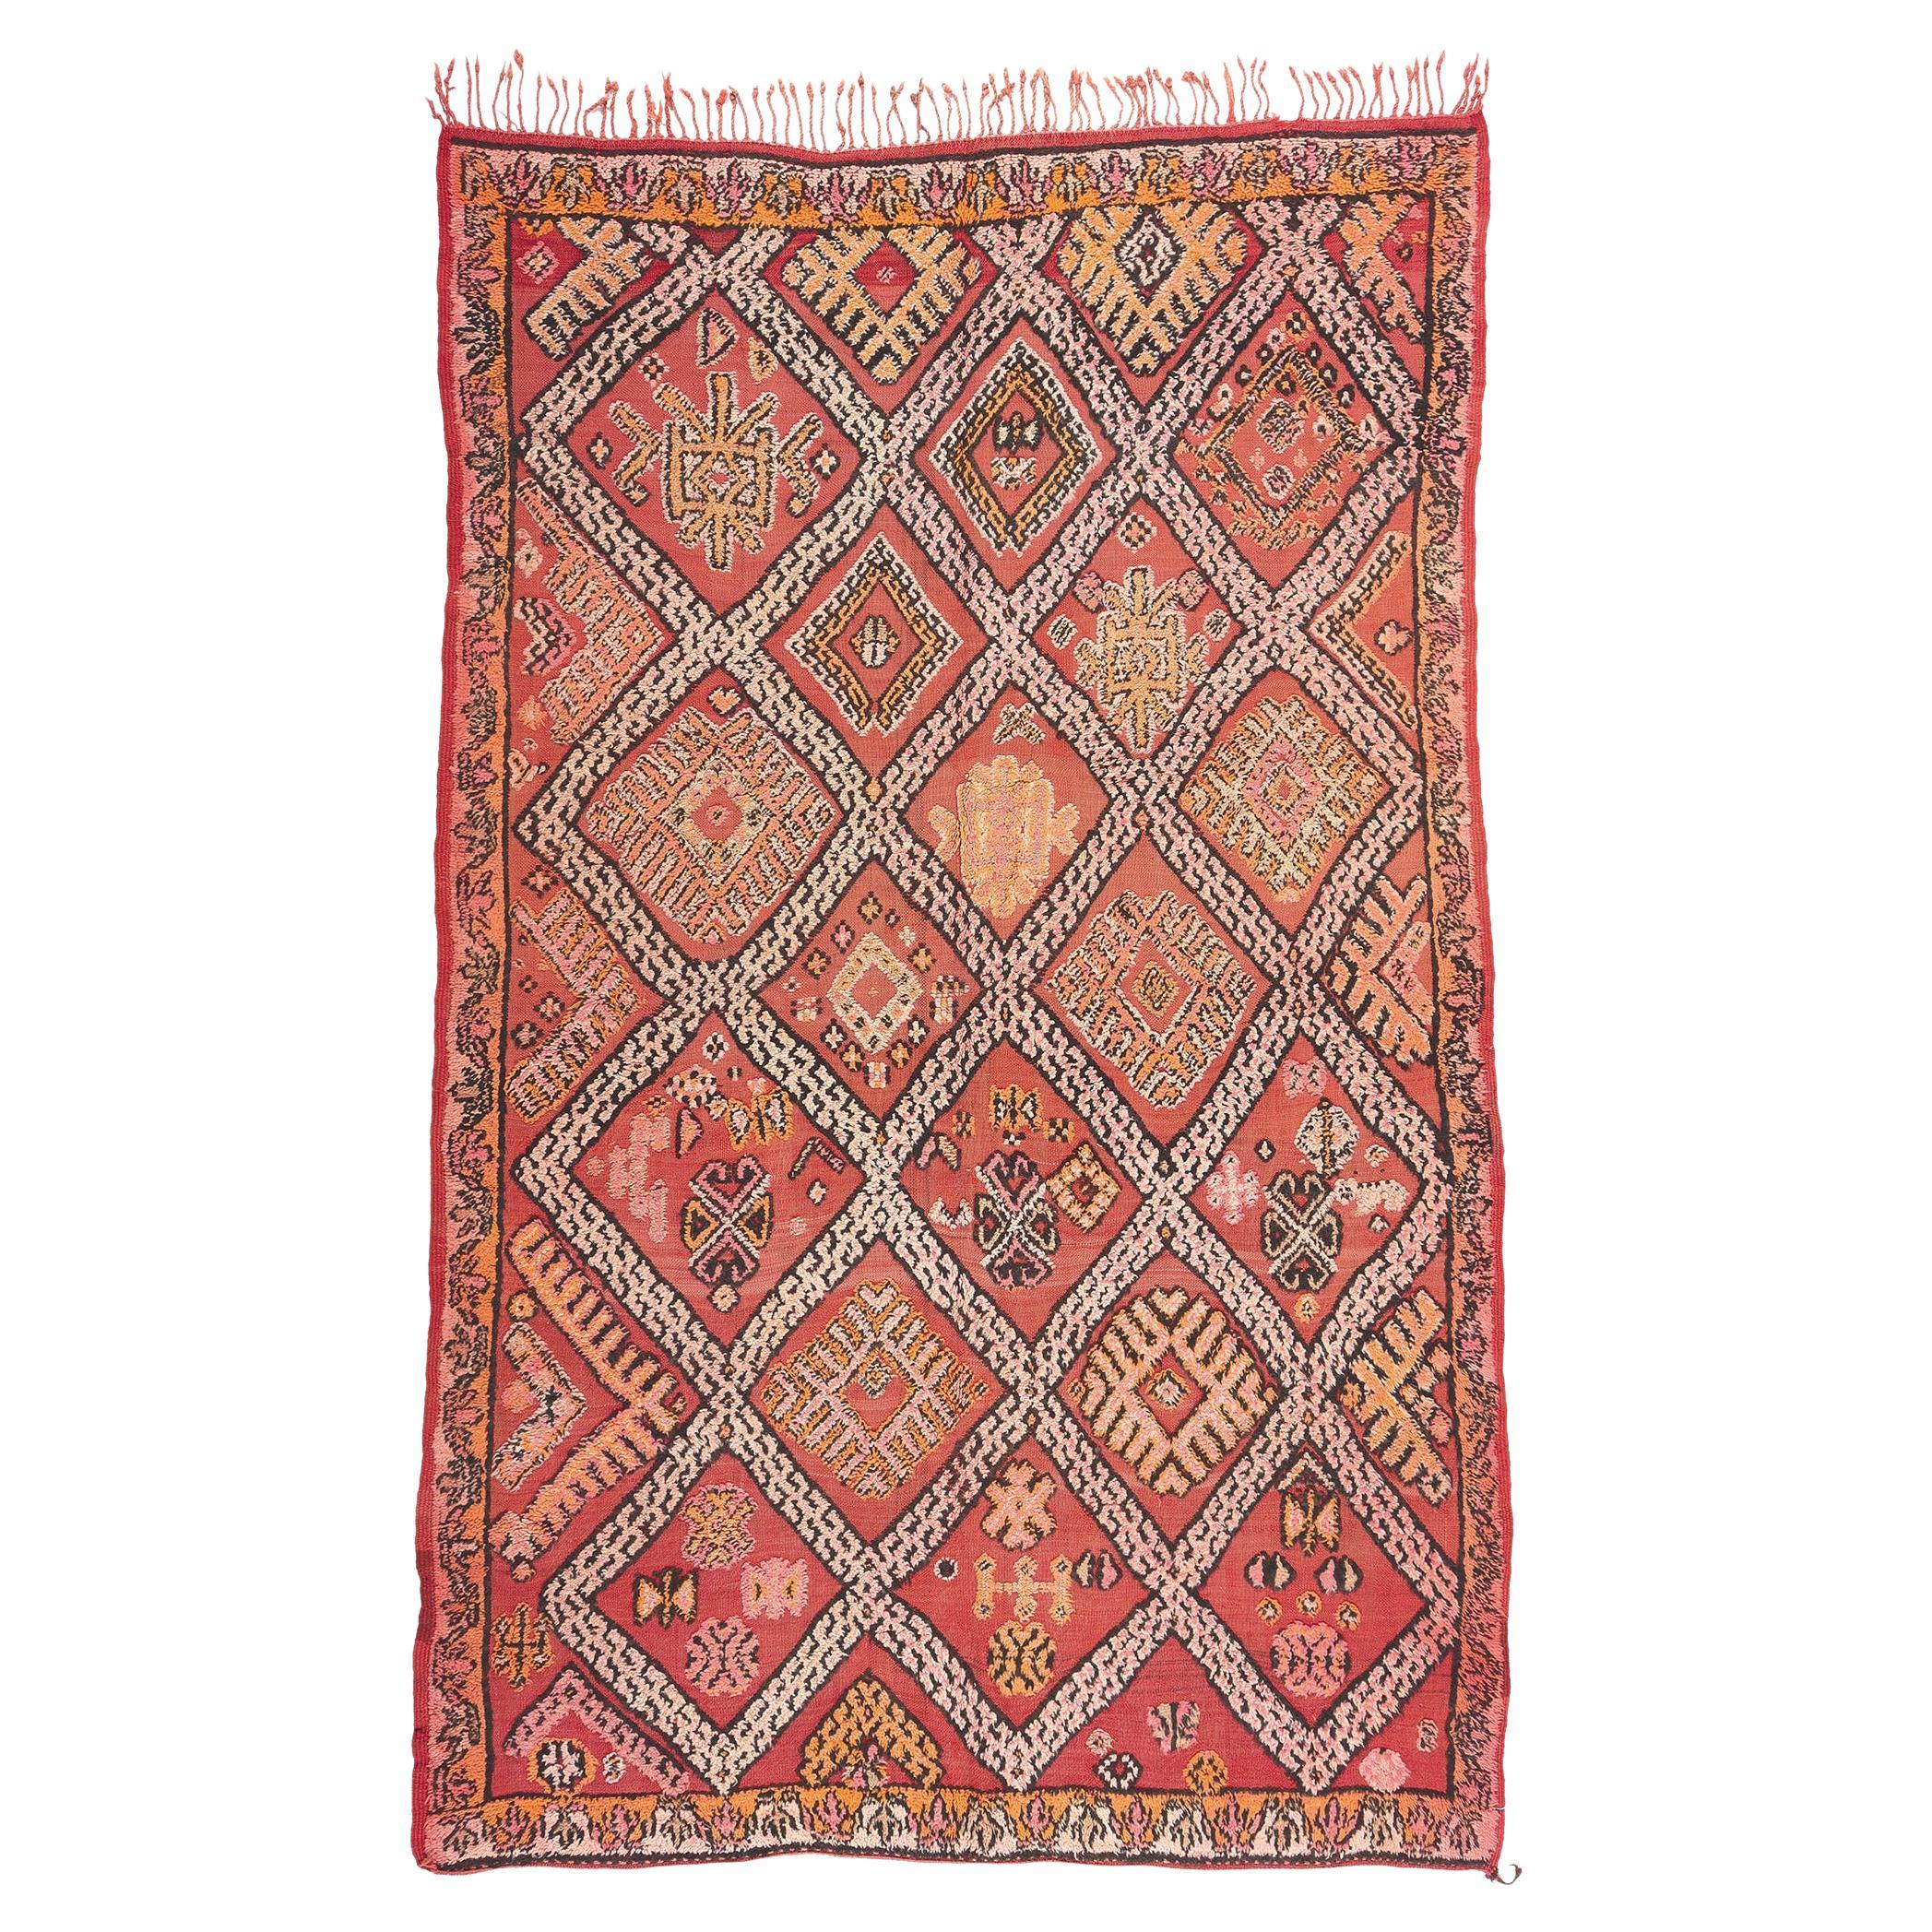 Vintage Taznakht Moroccan Kilim Rug, Tribal Allure Meets Southwest Boho Chic